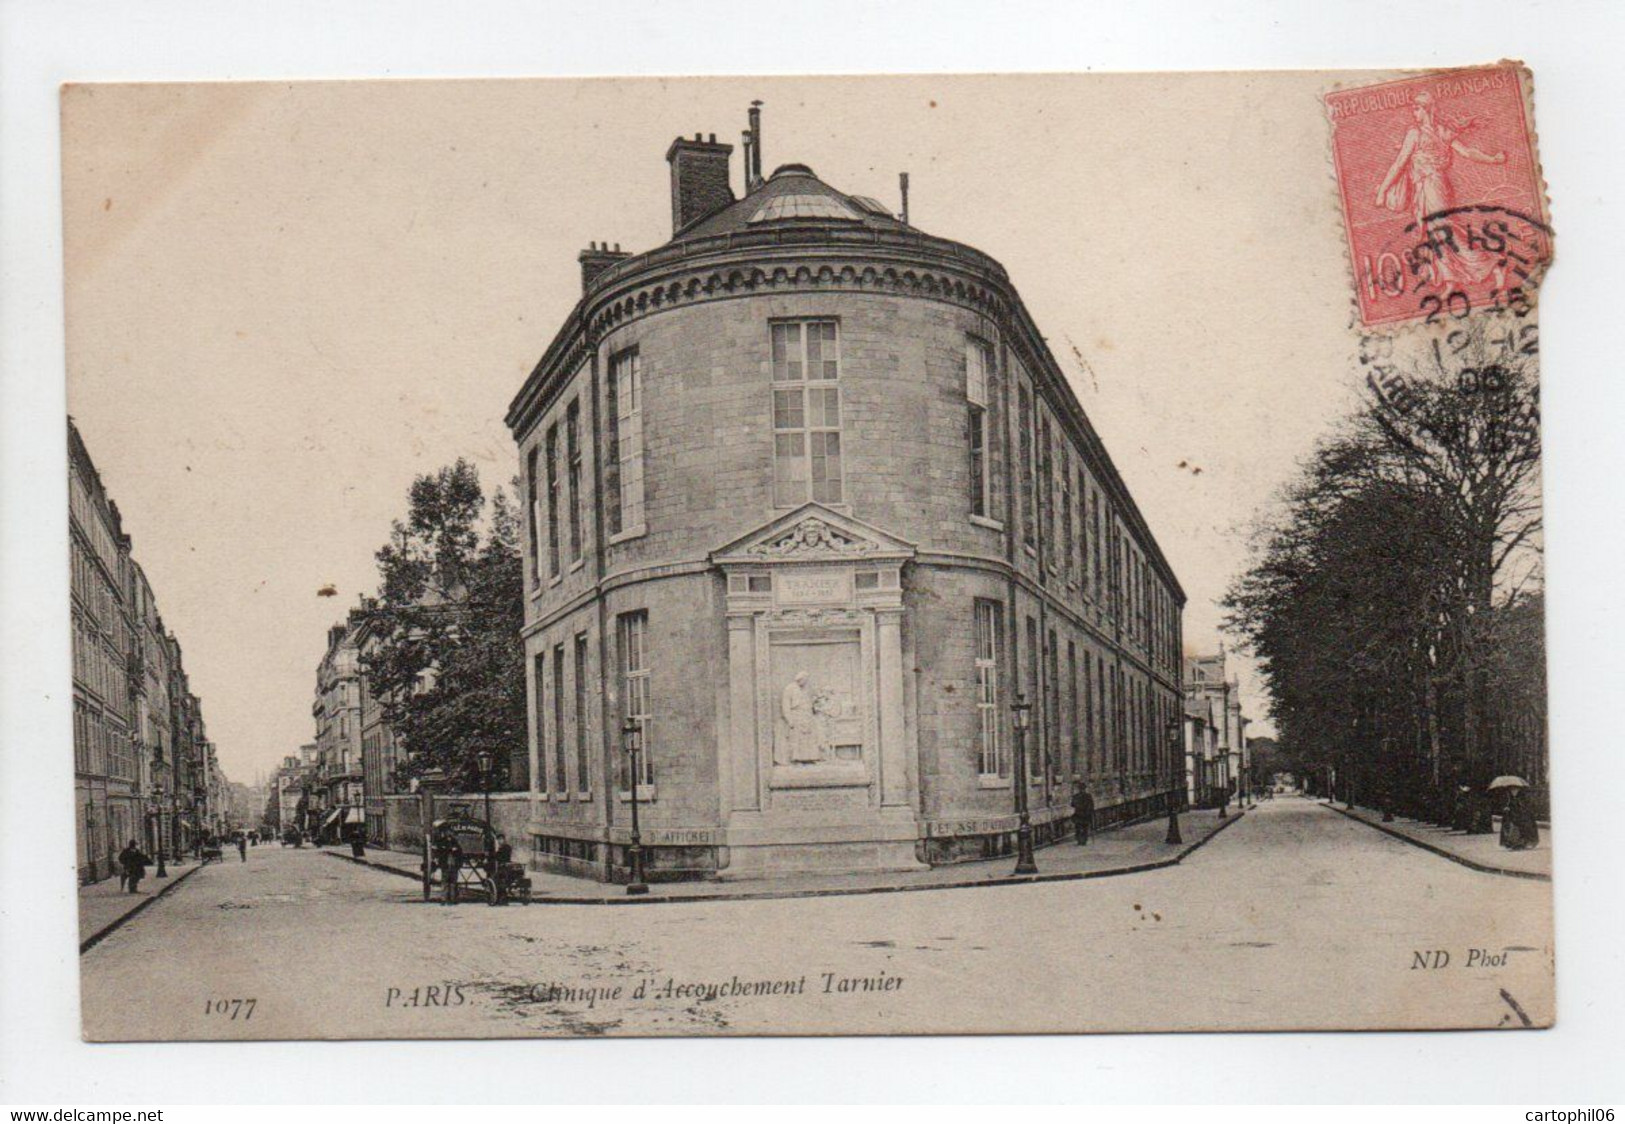 - CPA PARIS (75) - Clinique D'Accouchement Tarnier 1905 - Photo Neurdein 1077 - - Santé, Hôpitaux